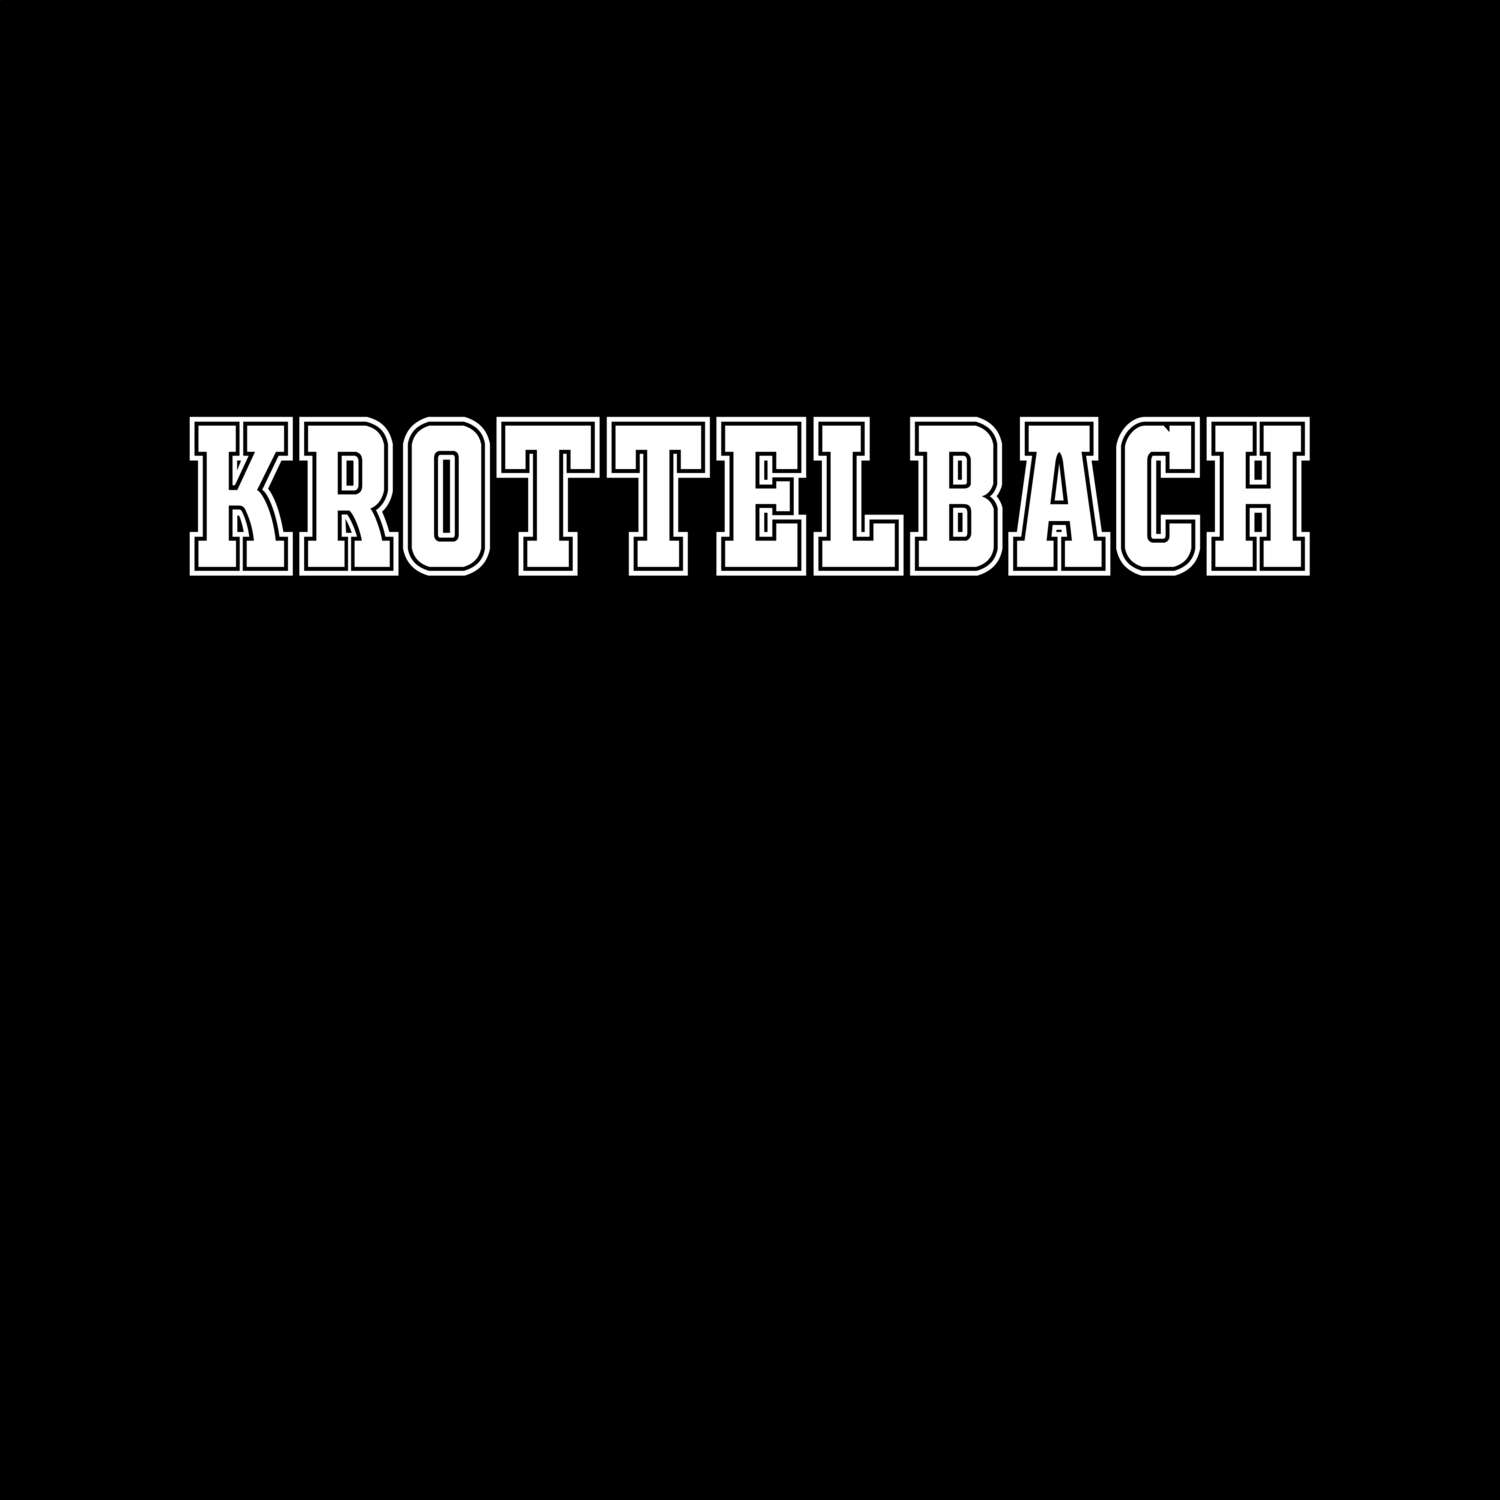 Krottelbach T-Shirt »Classic«